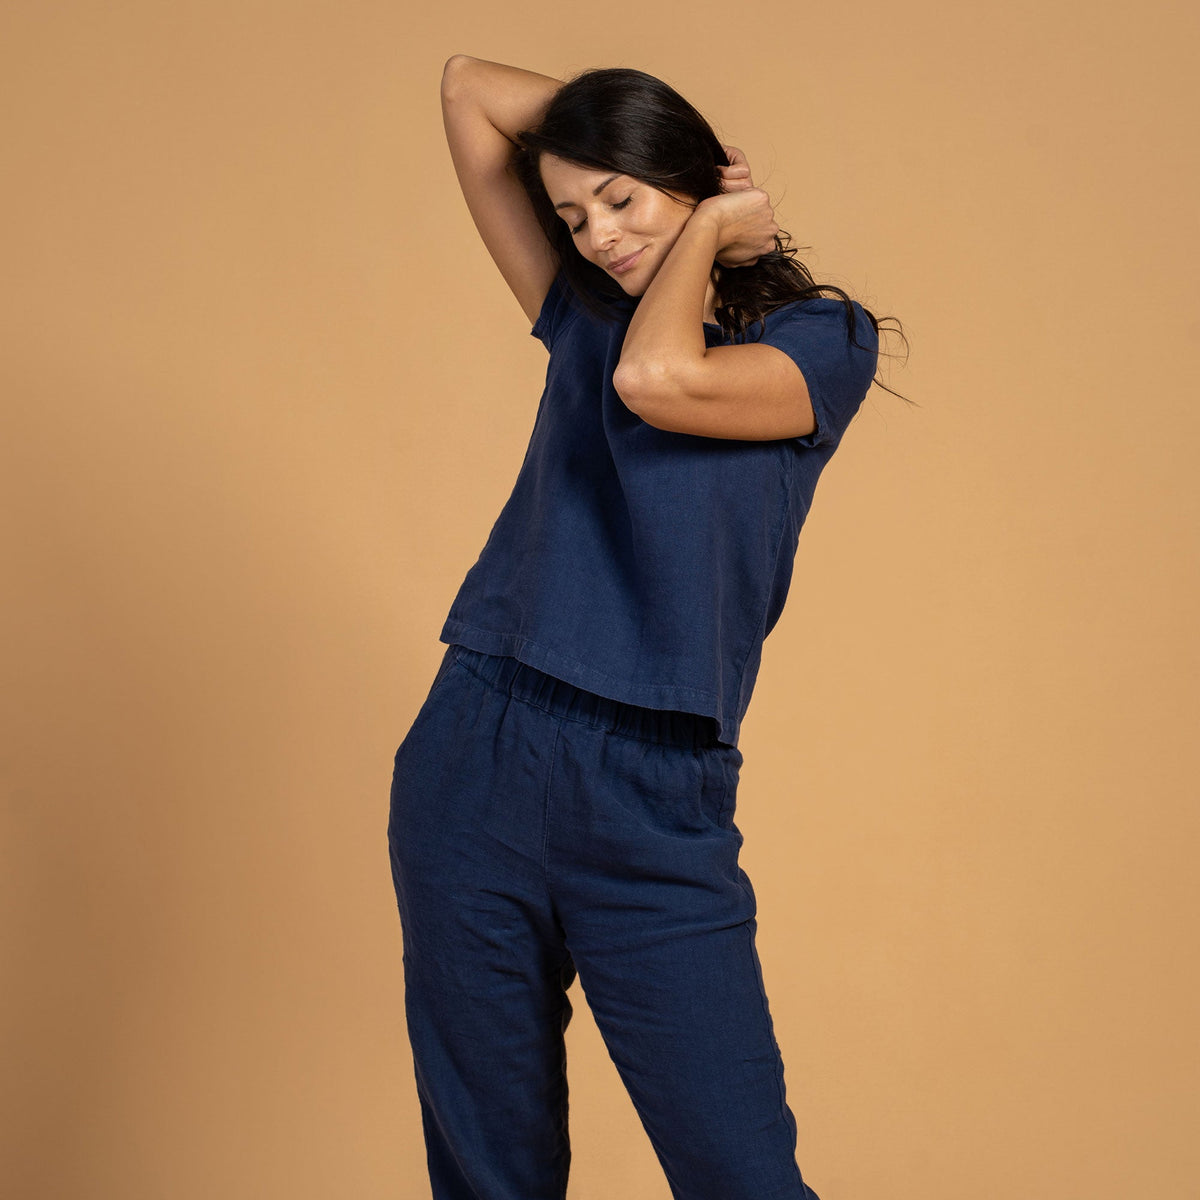 MENIQUE 100% Linen T-Shirt Top & Pants 2-Piece Storm Blue